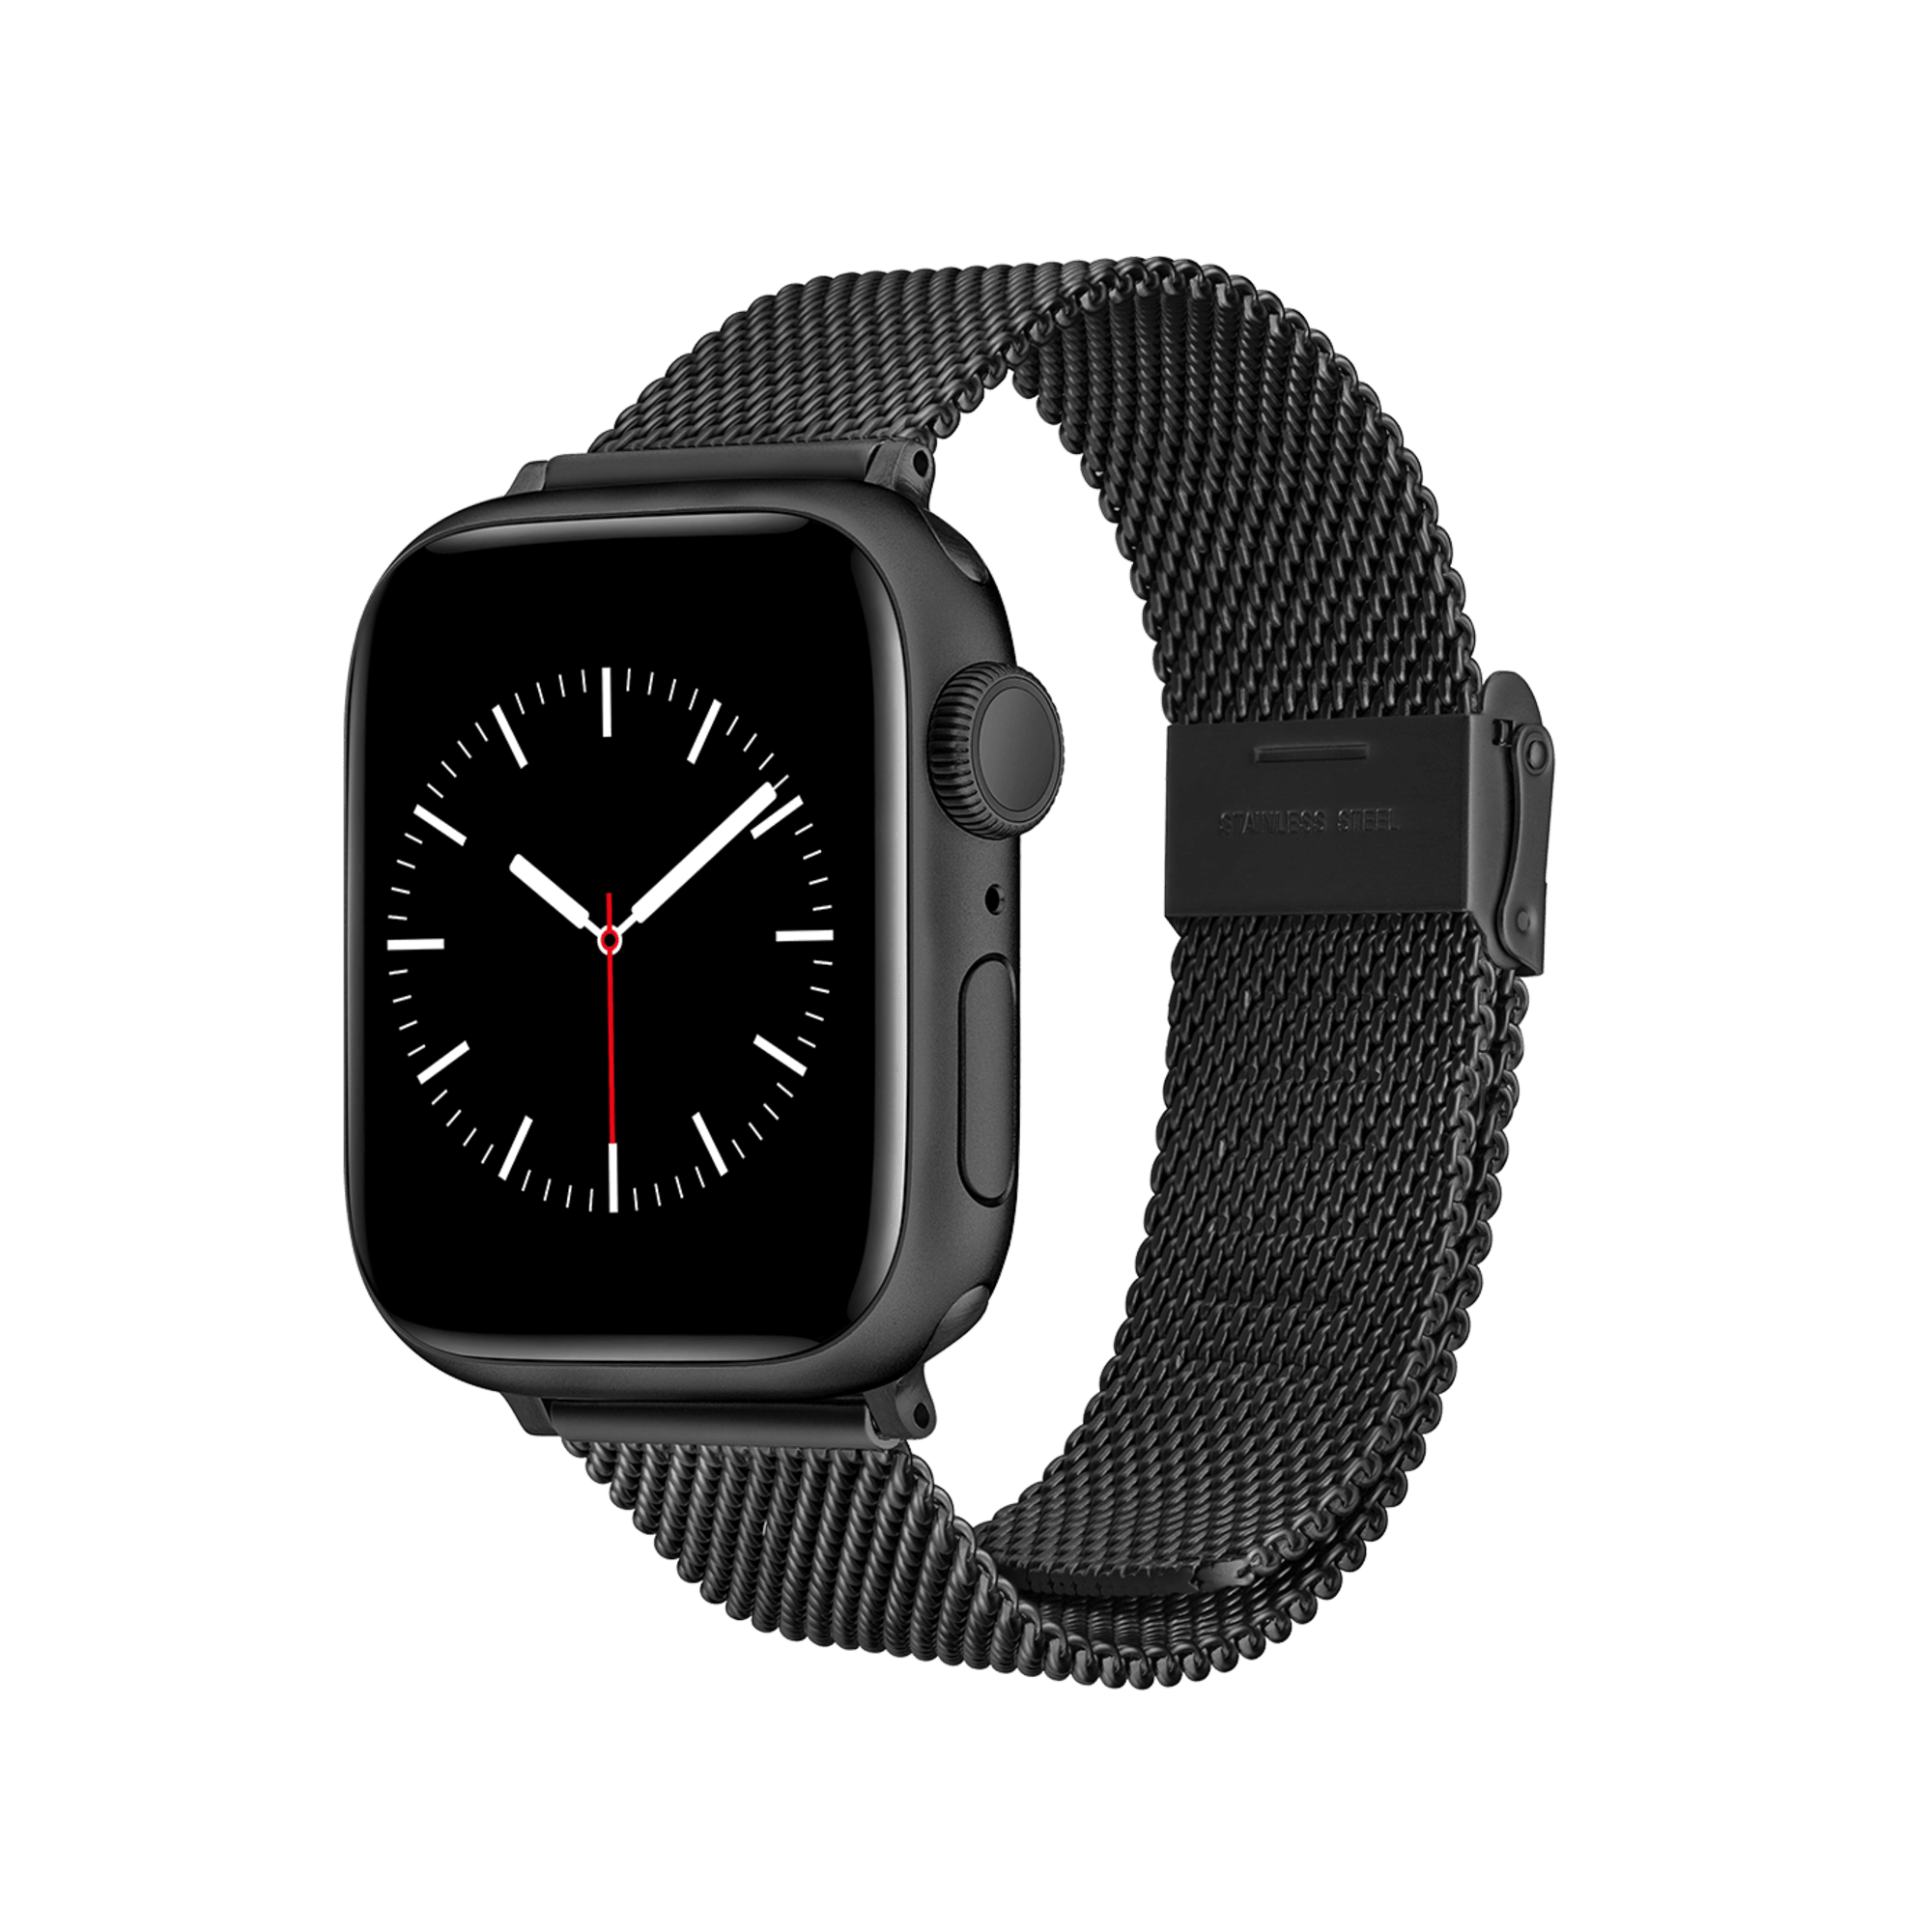 Cinturino per smartwatch - Cinturino nero sabbiato